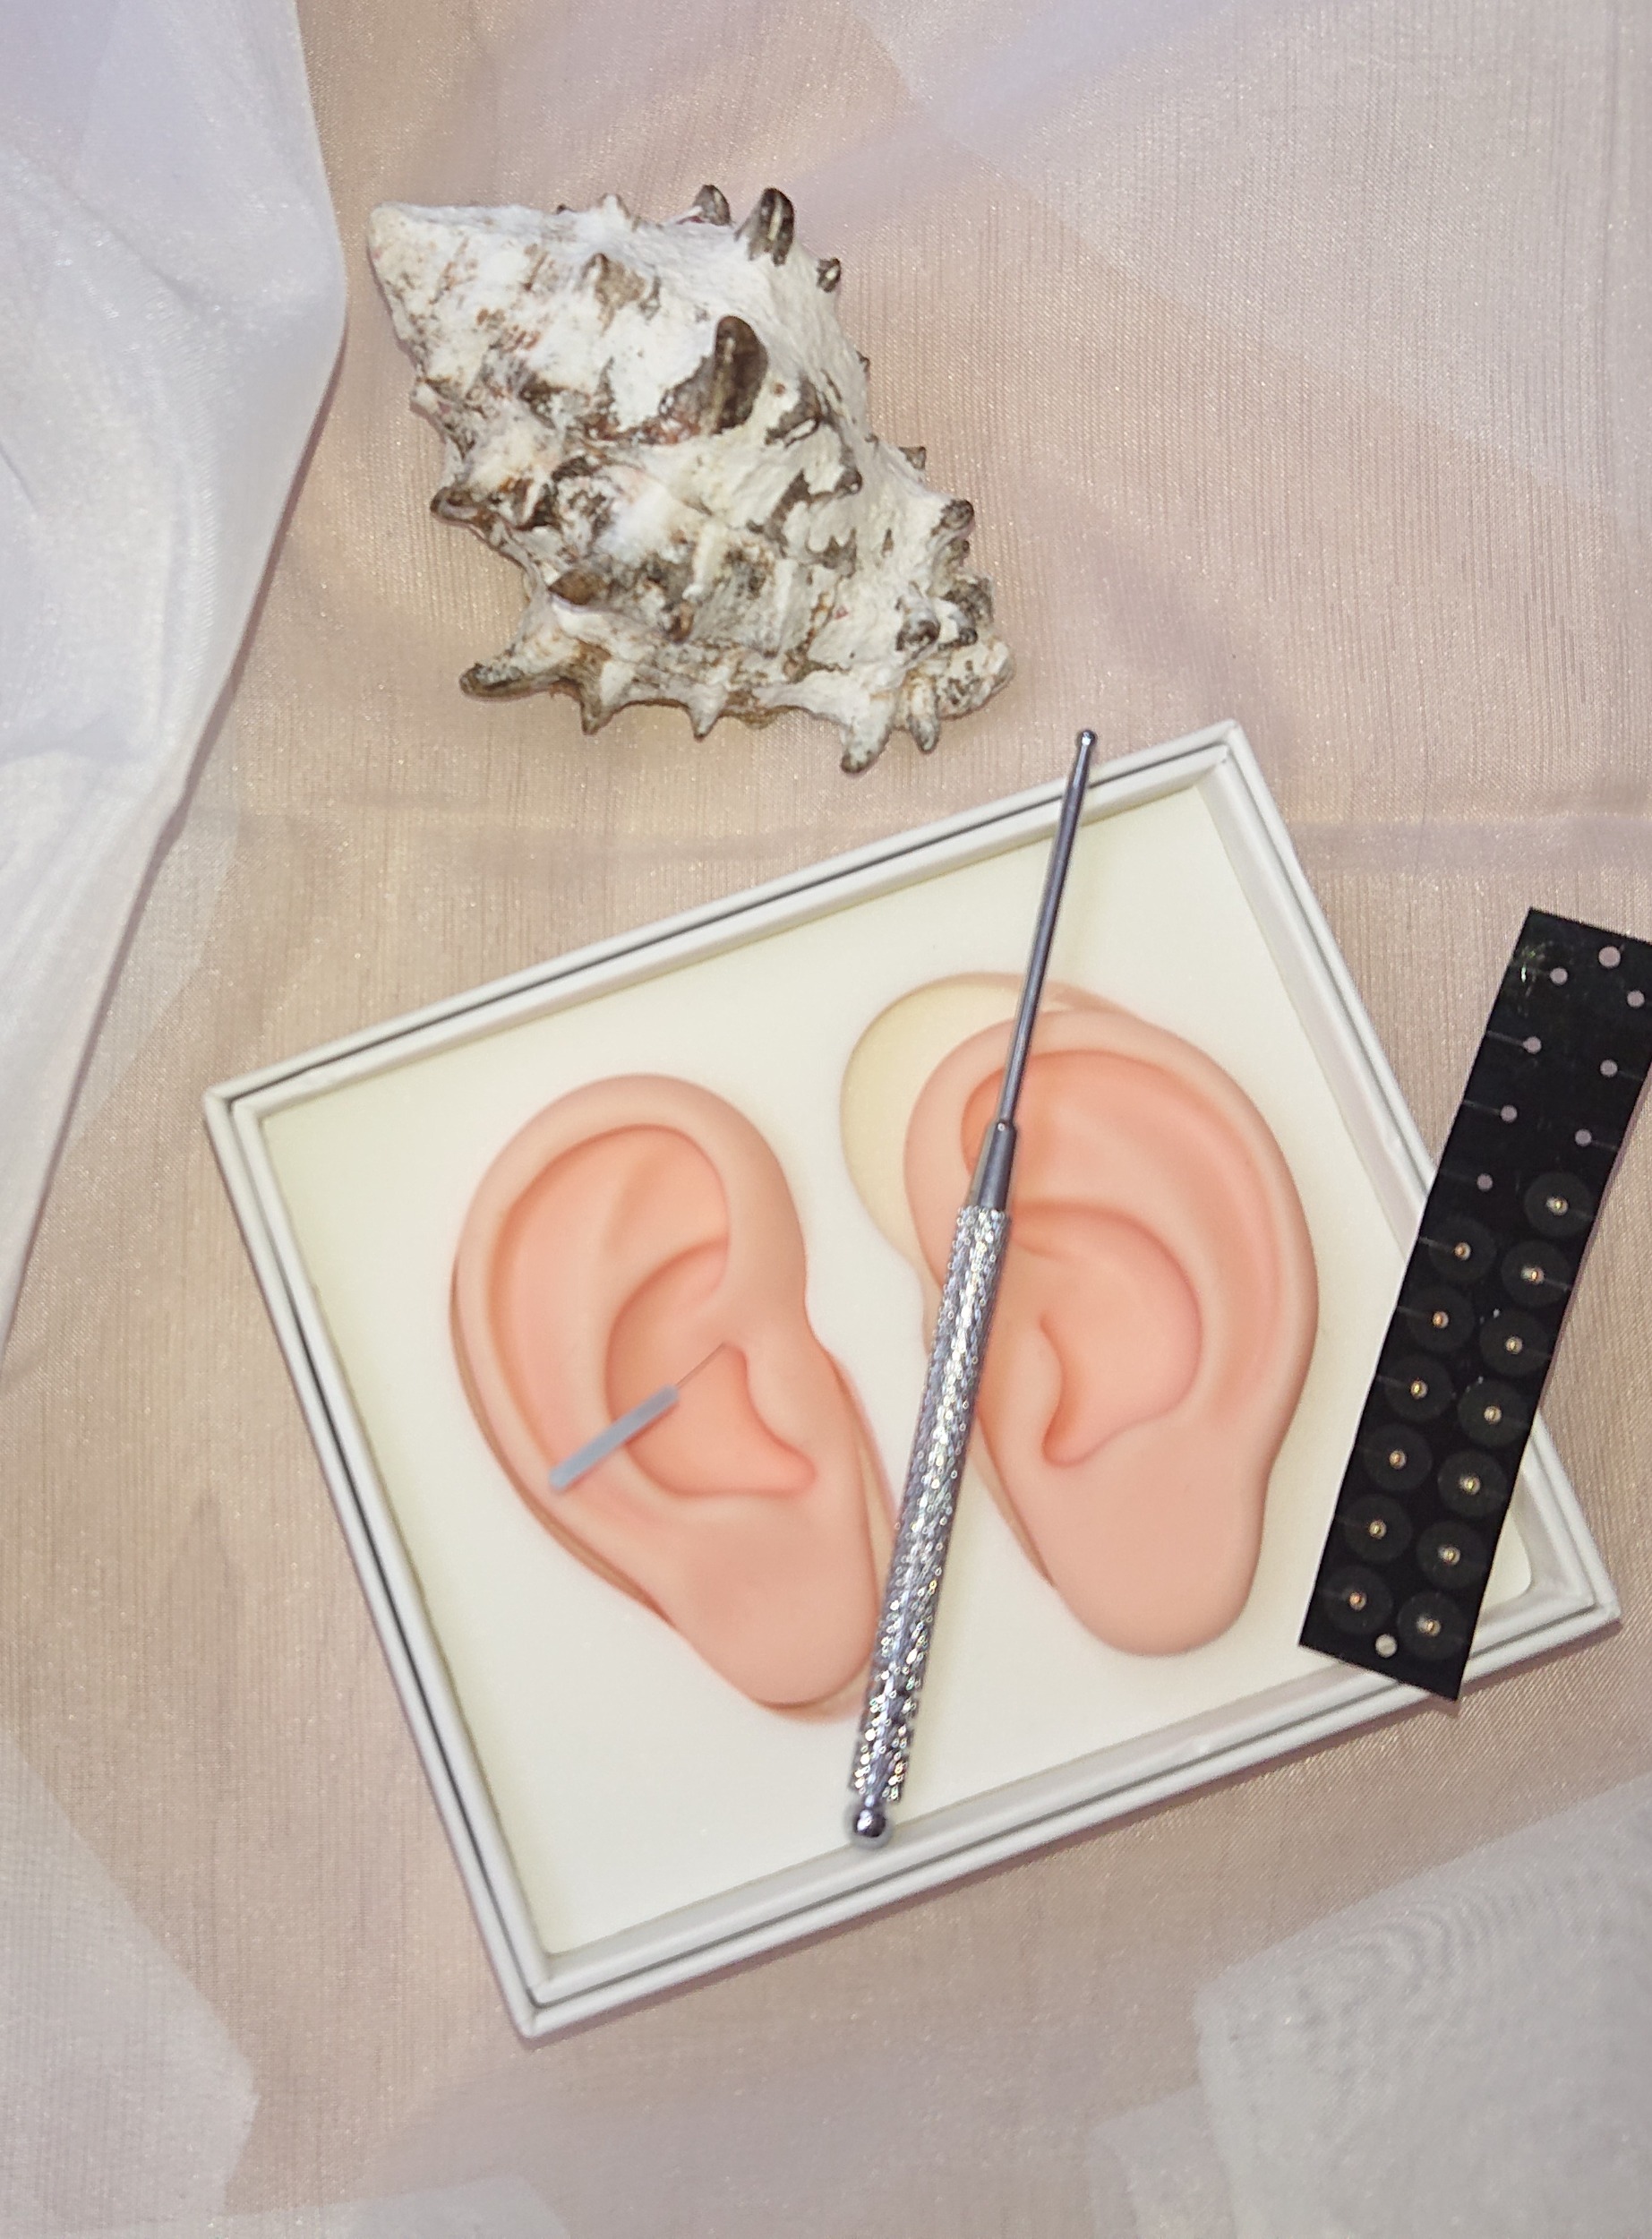 Ohrenmodell mit Akupunkturnadel, Punktsucher und aufklebbaren Ohrsamen